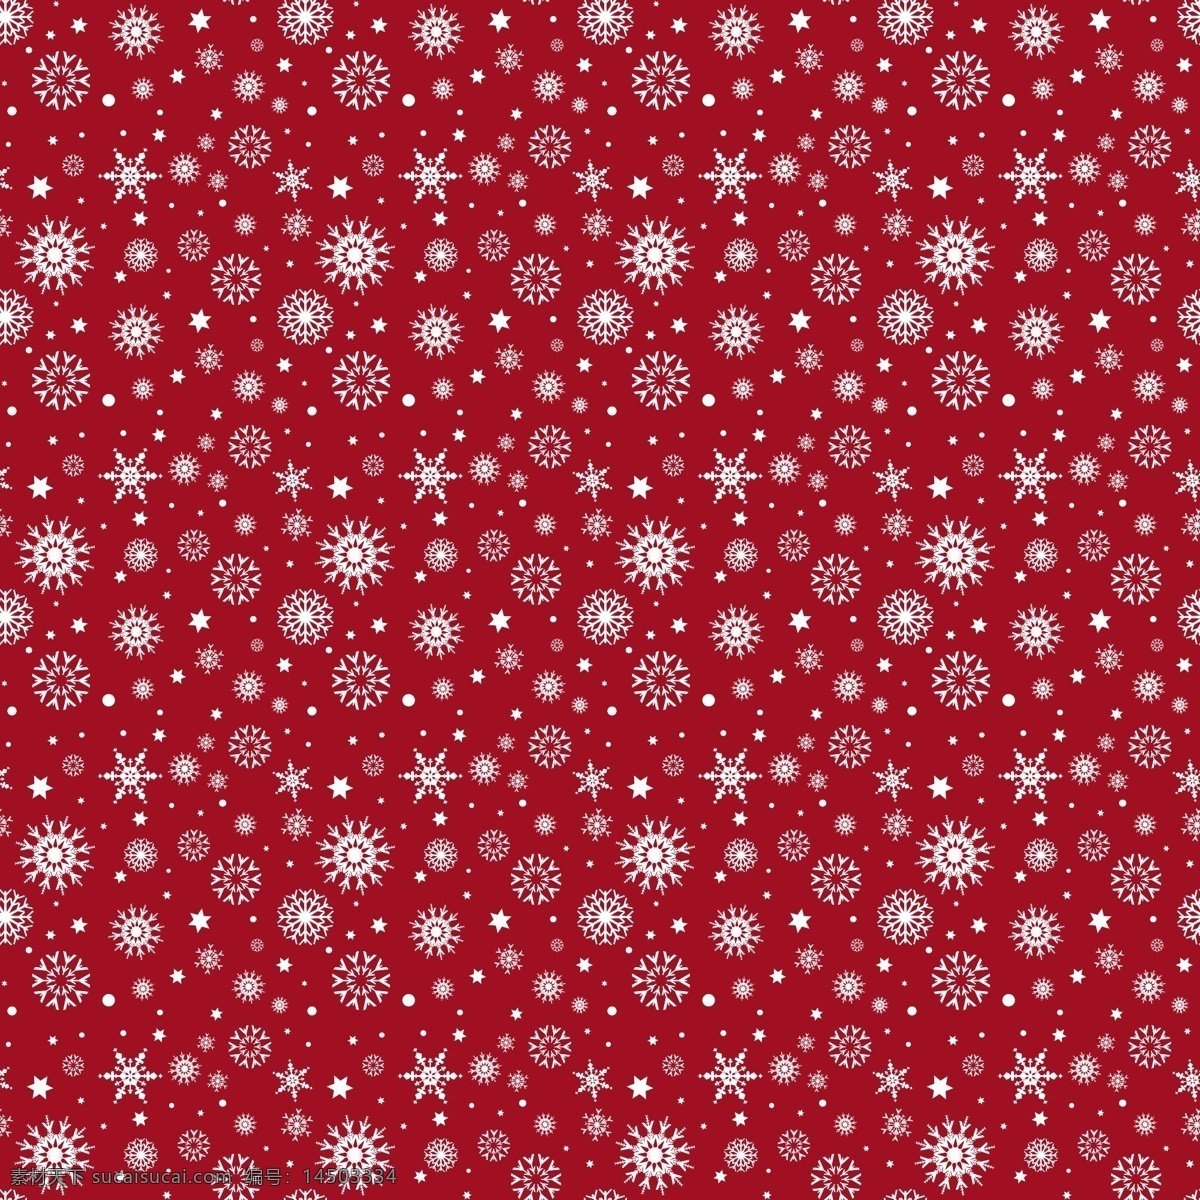 红色 小 雪花 无缝 背景 矢量 花纹 冬季 贺卡 无缝背景 红色背景 底纹背景 圣诞节背景